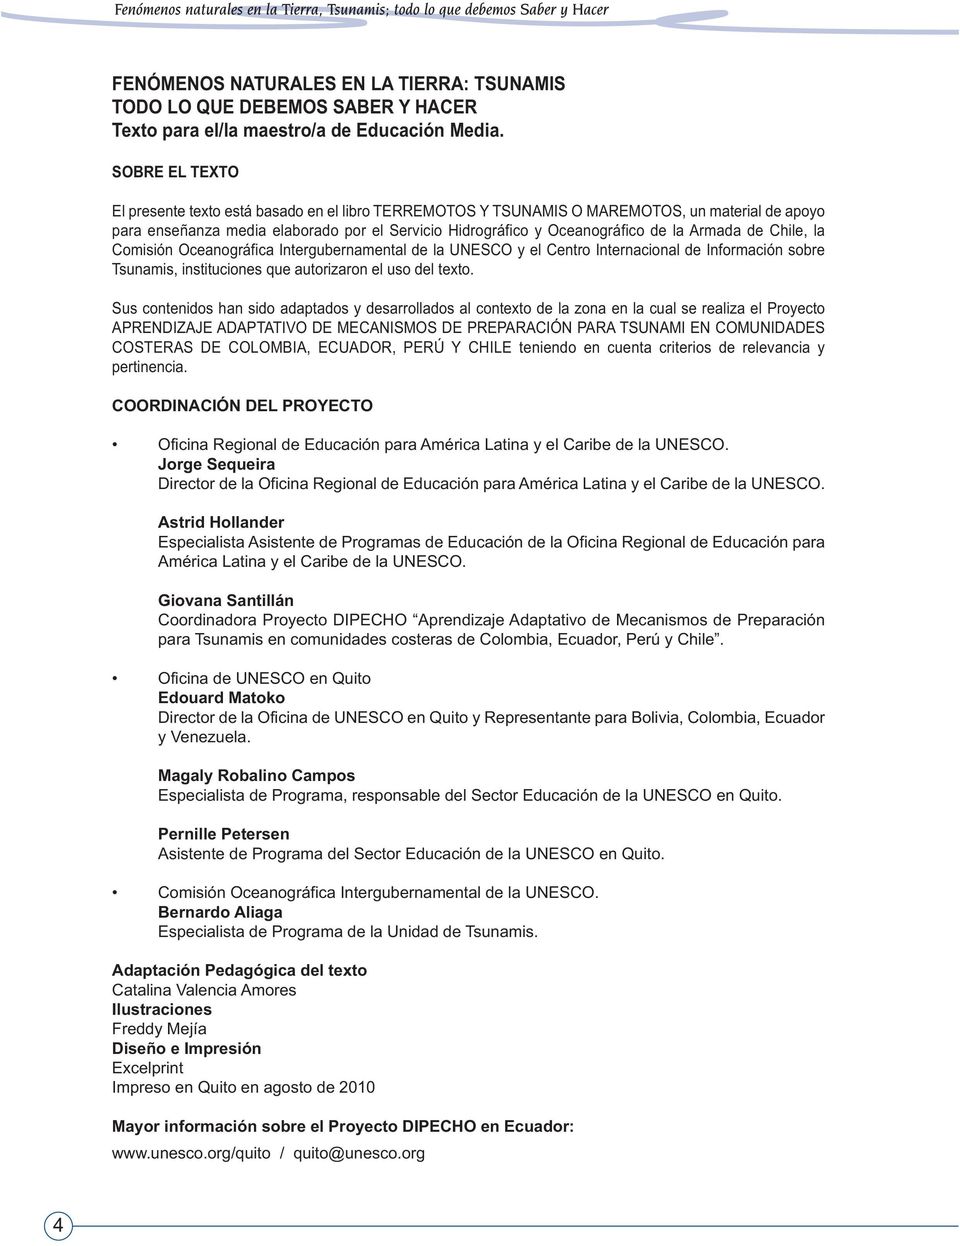 Armada de Chile, la Comisión Oceanográfica Intergubernamental de la UNESCO y el Centro Internacional de Información sobre Tsunamis, instituciones que autorizaron el uso del texto.